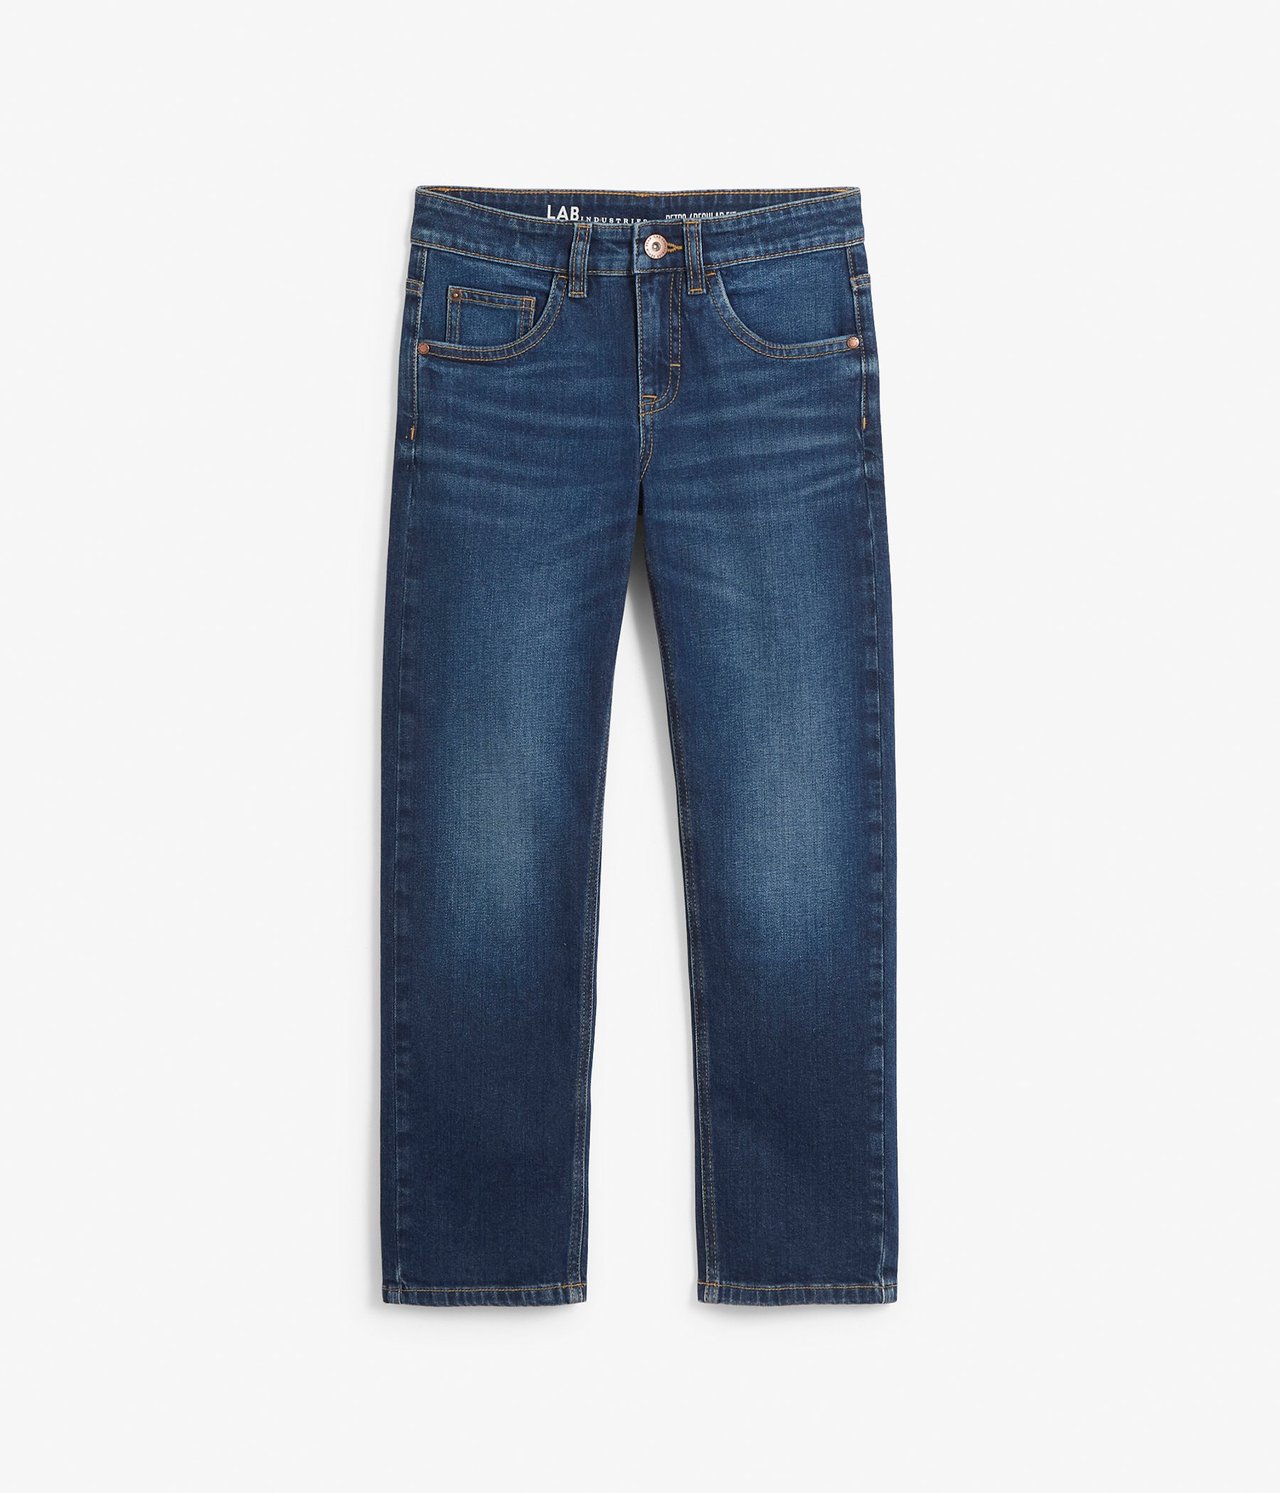 Retro jeans regular fit Tumma denimi - null - 0